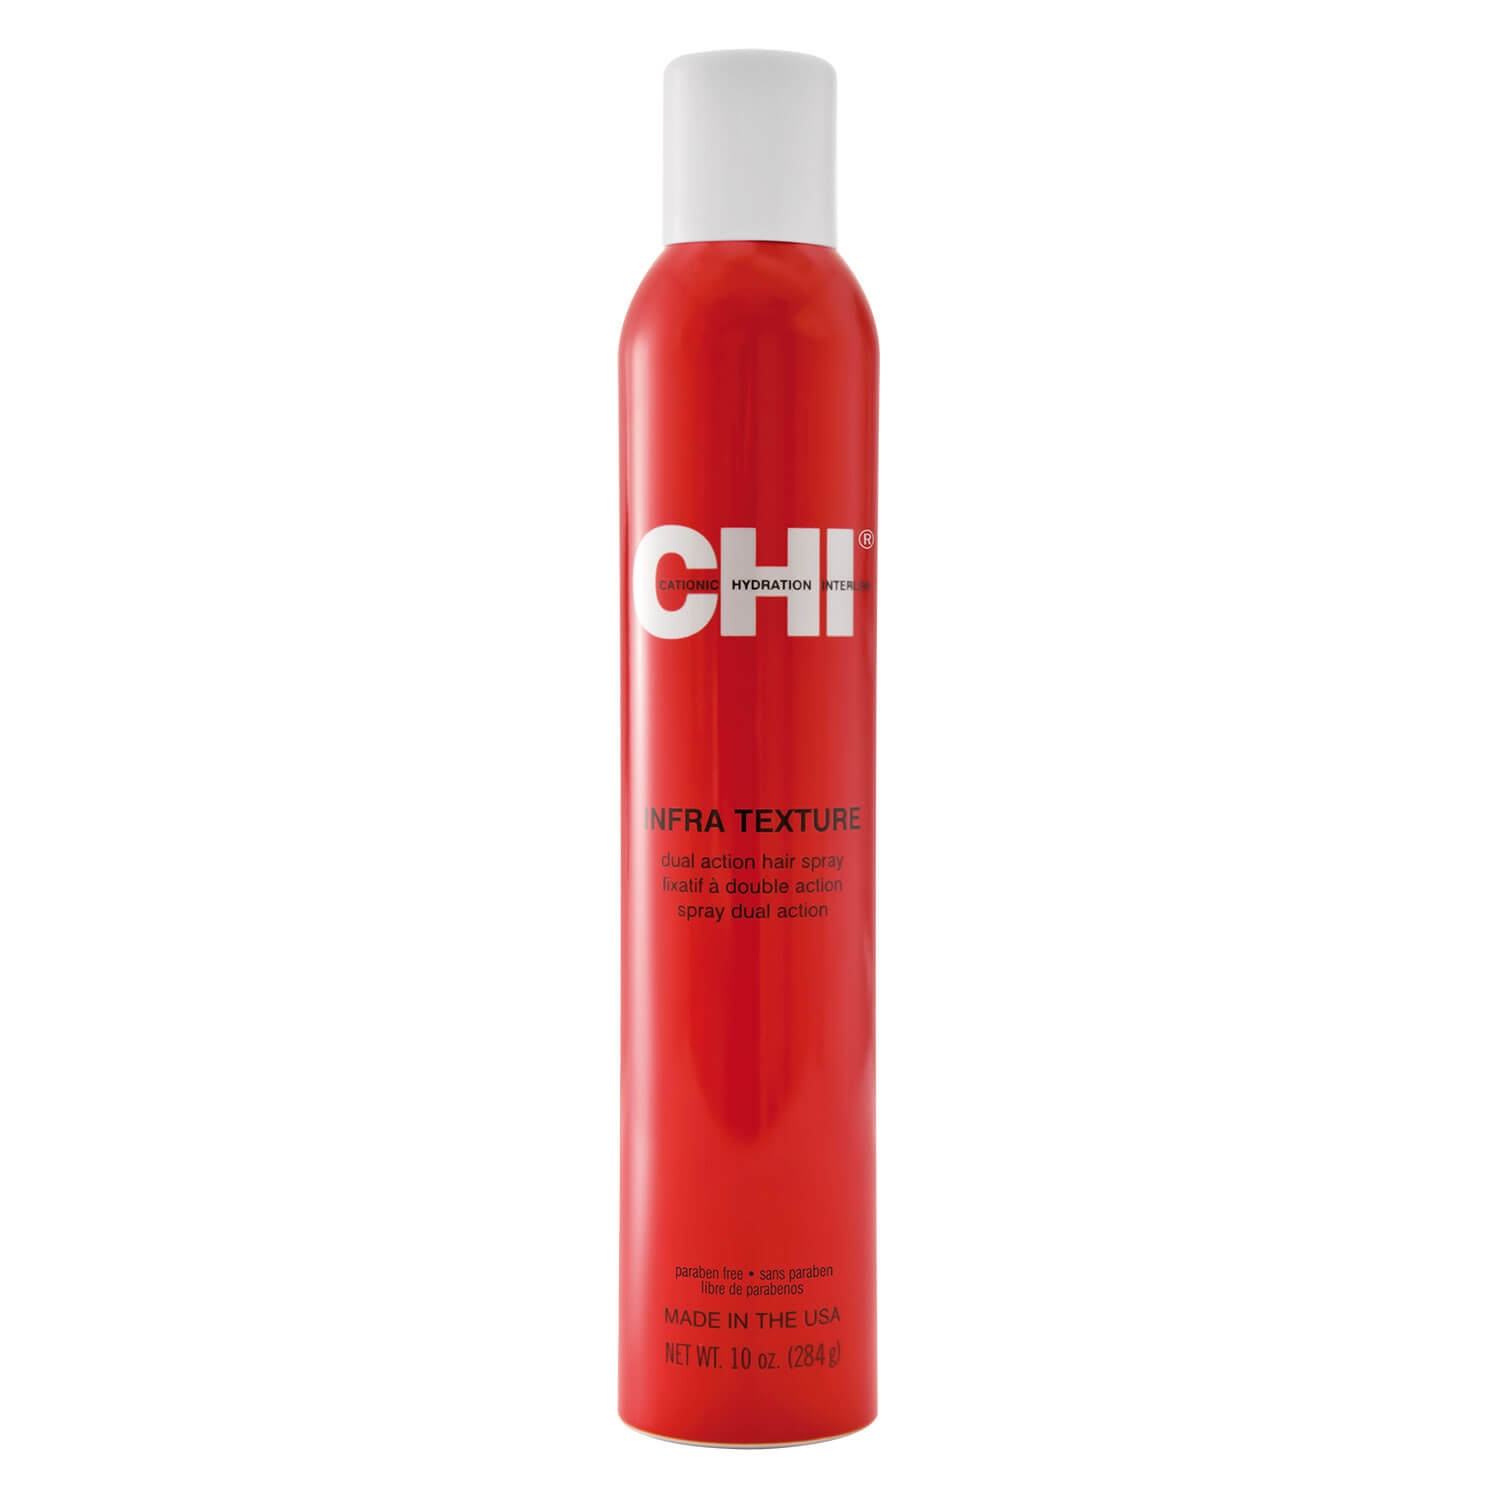 Produktbild von CHI Styling - Infra Texture Dual Action Hair Spray